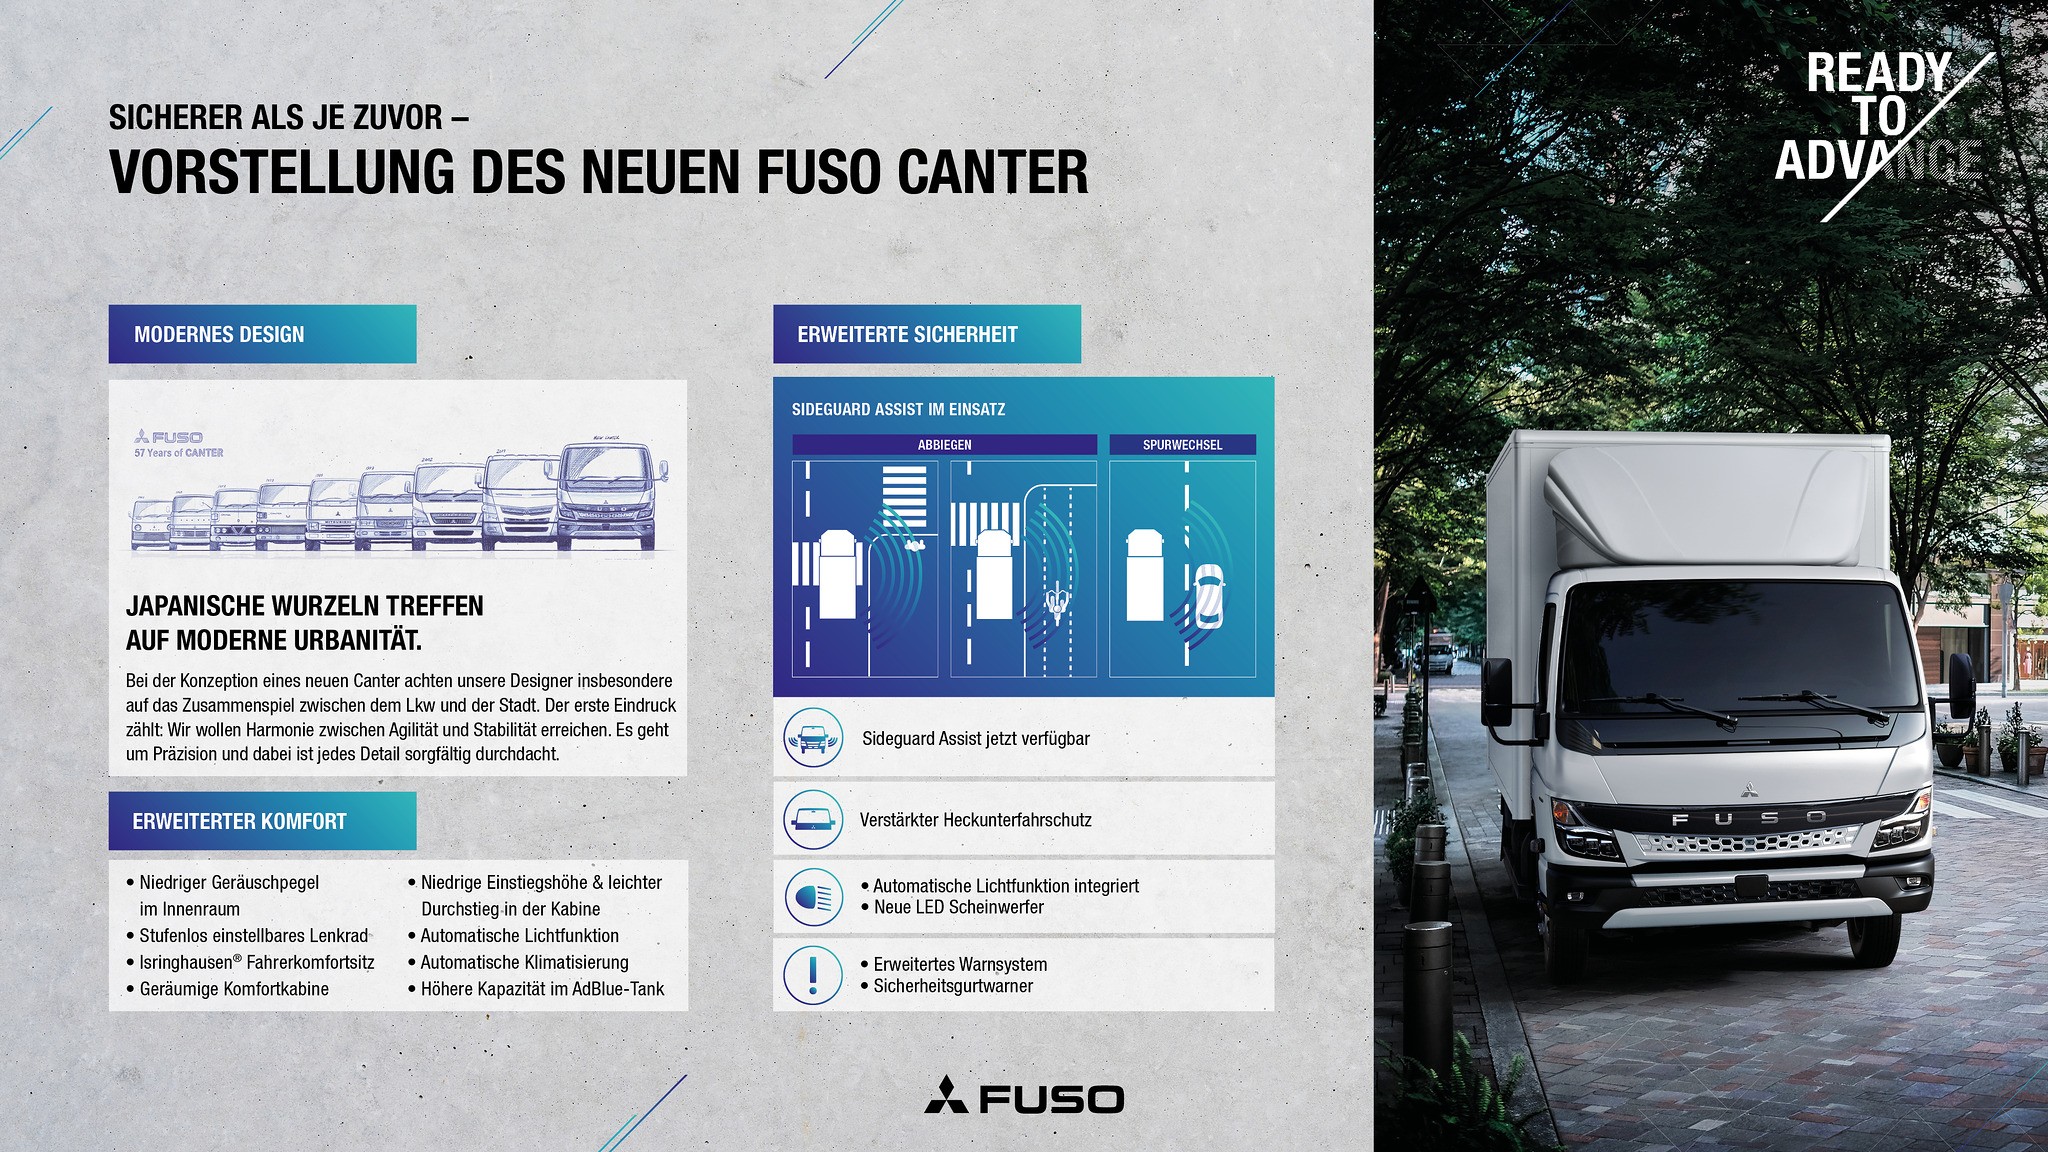 Produktionsstart für den neuen FUSO Canter Leicht-Lkw in Europa